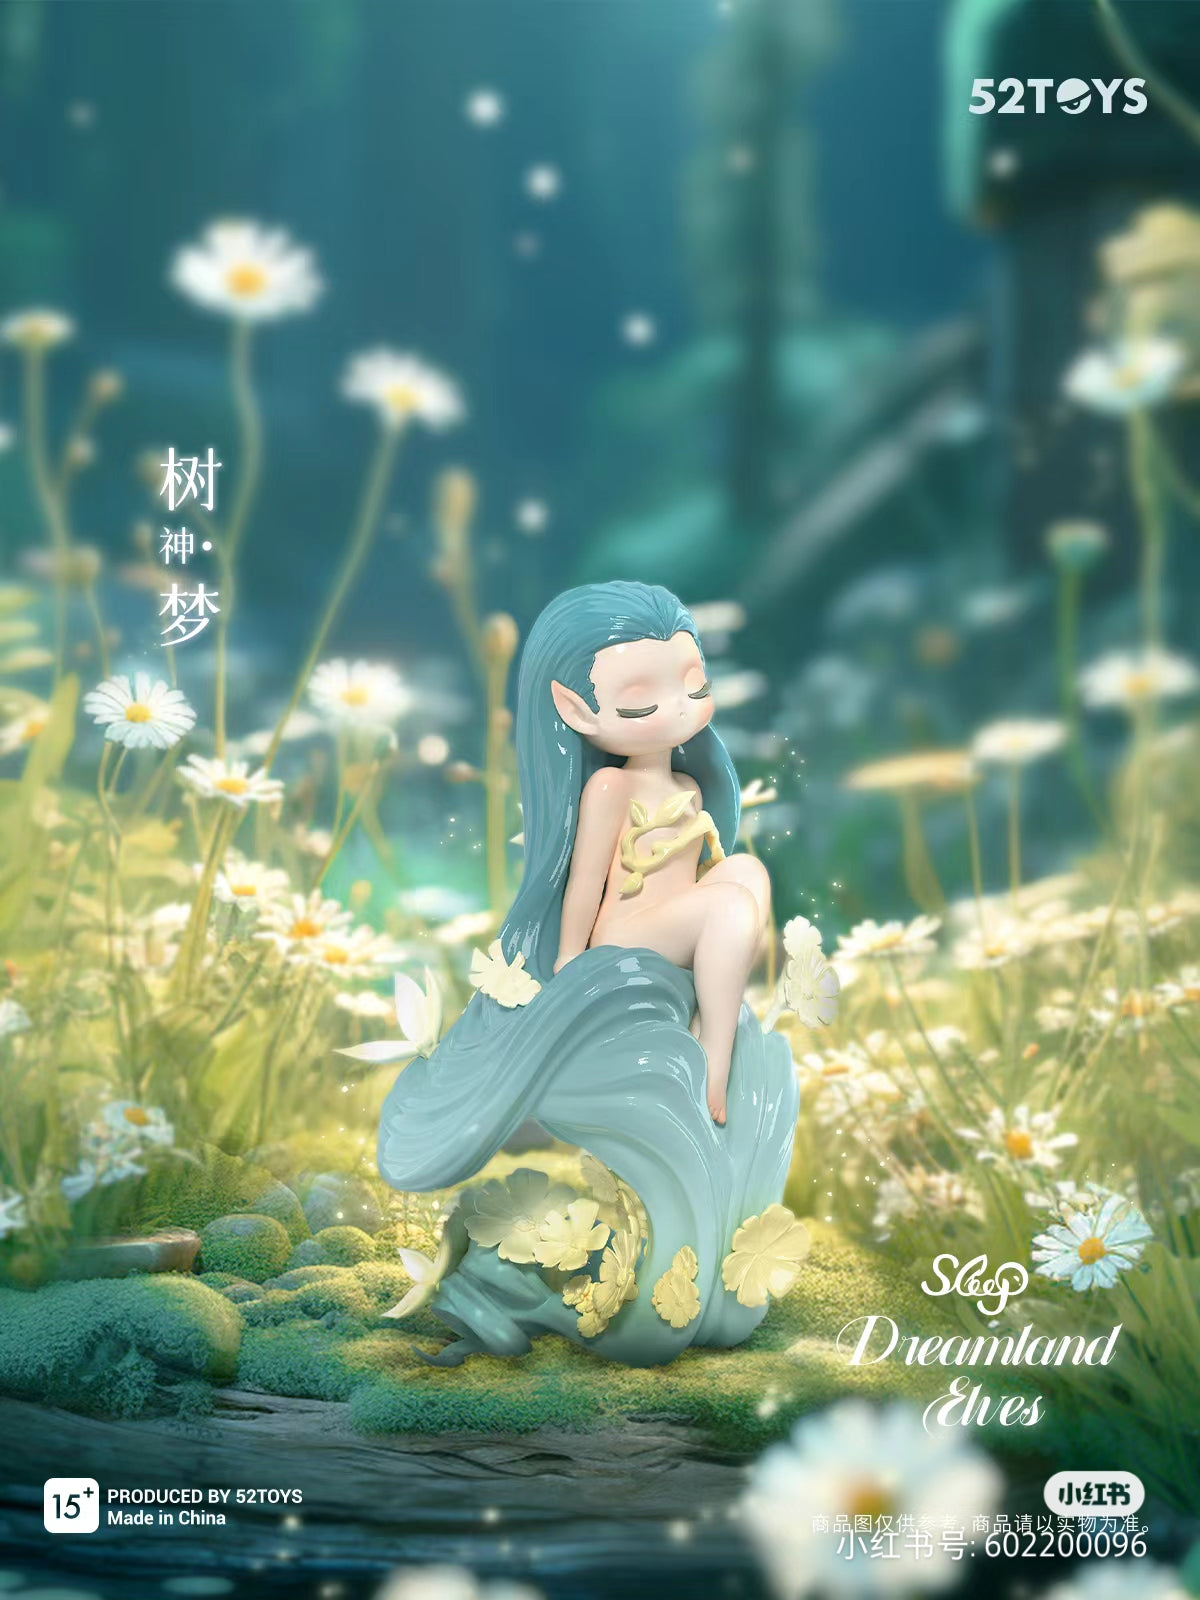 [52TOYS] Sleep - Dreamland Elves Blind Box